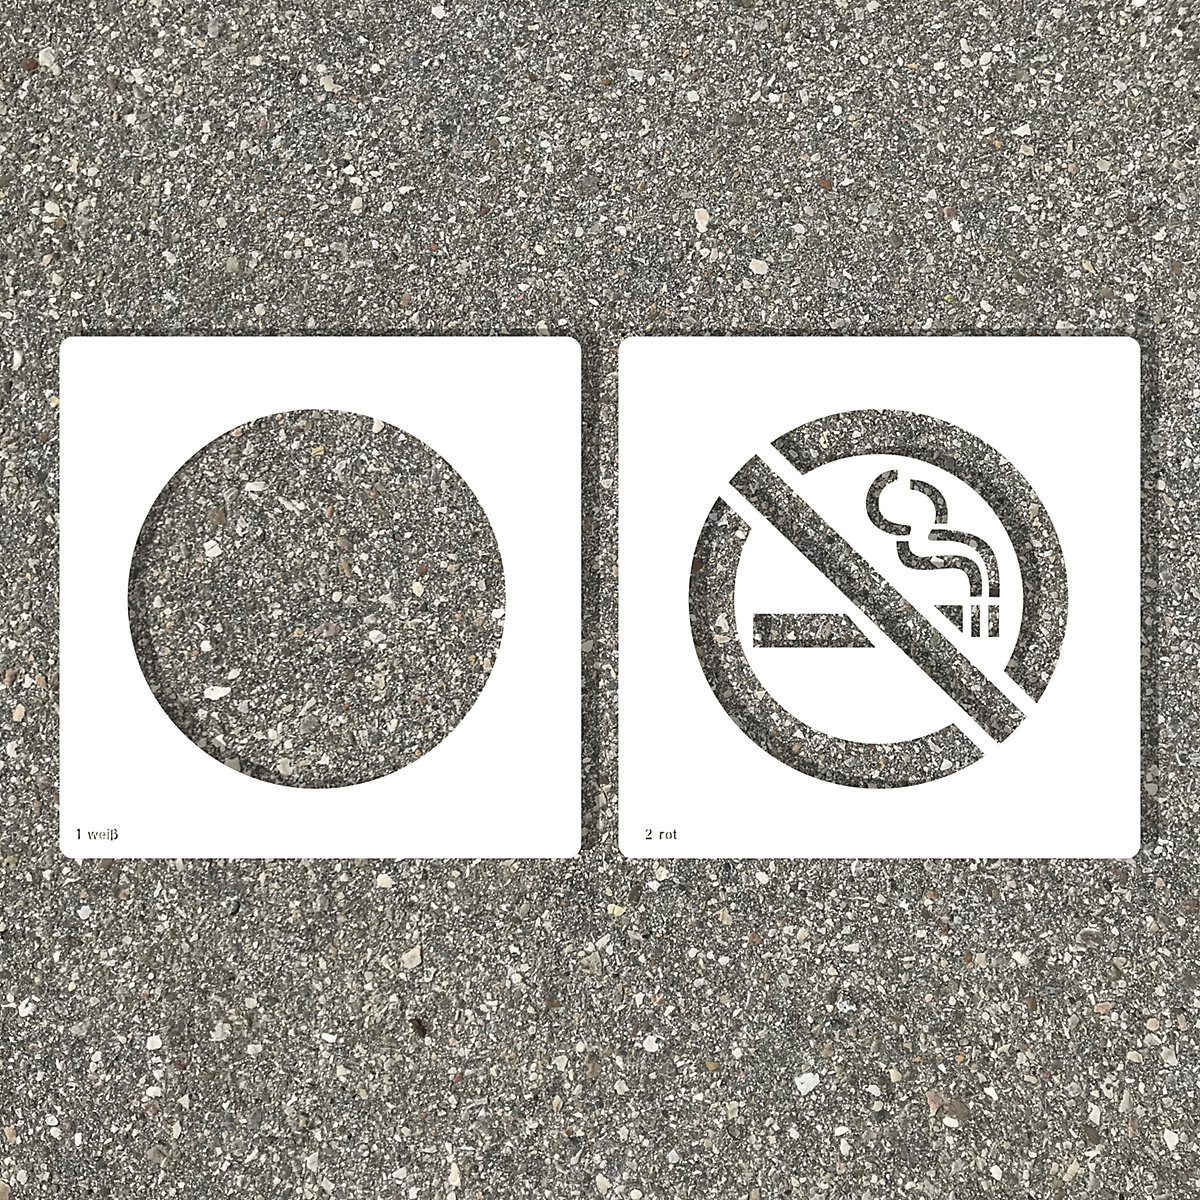 Plantilla de suelo, prohibido fumar, plástico-2